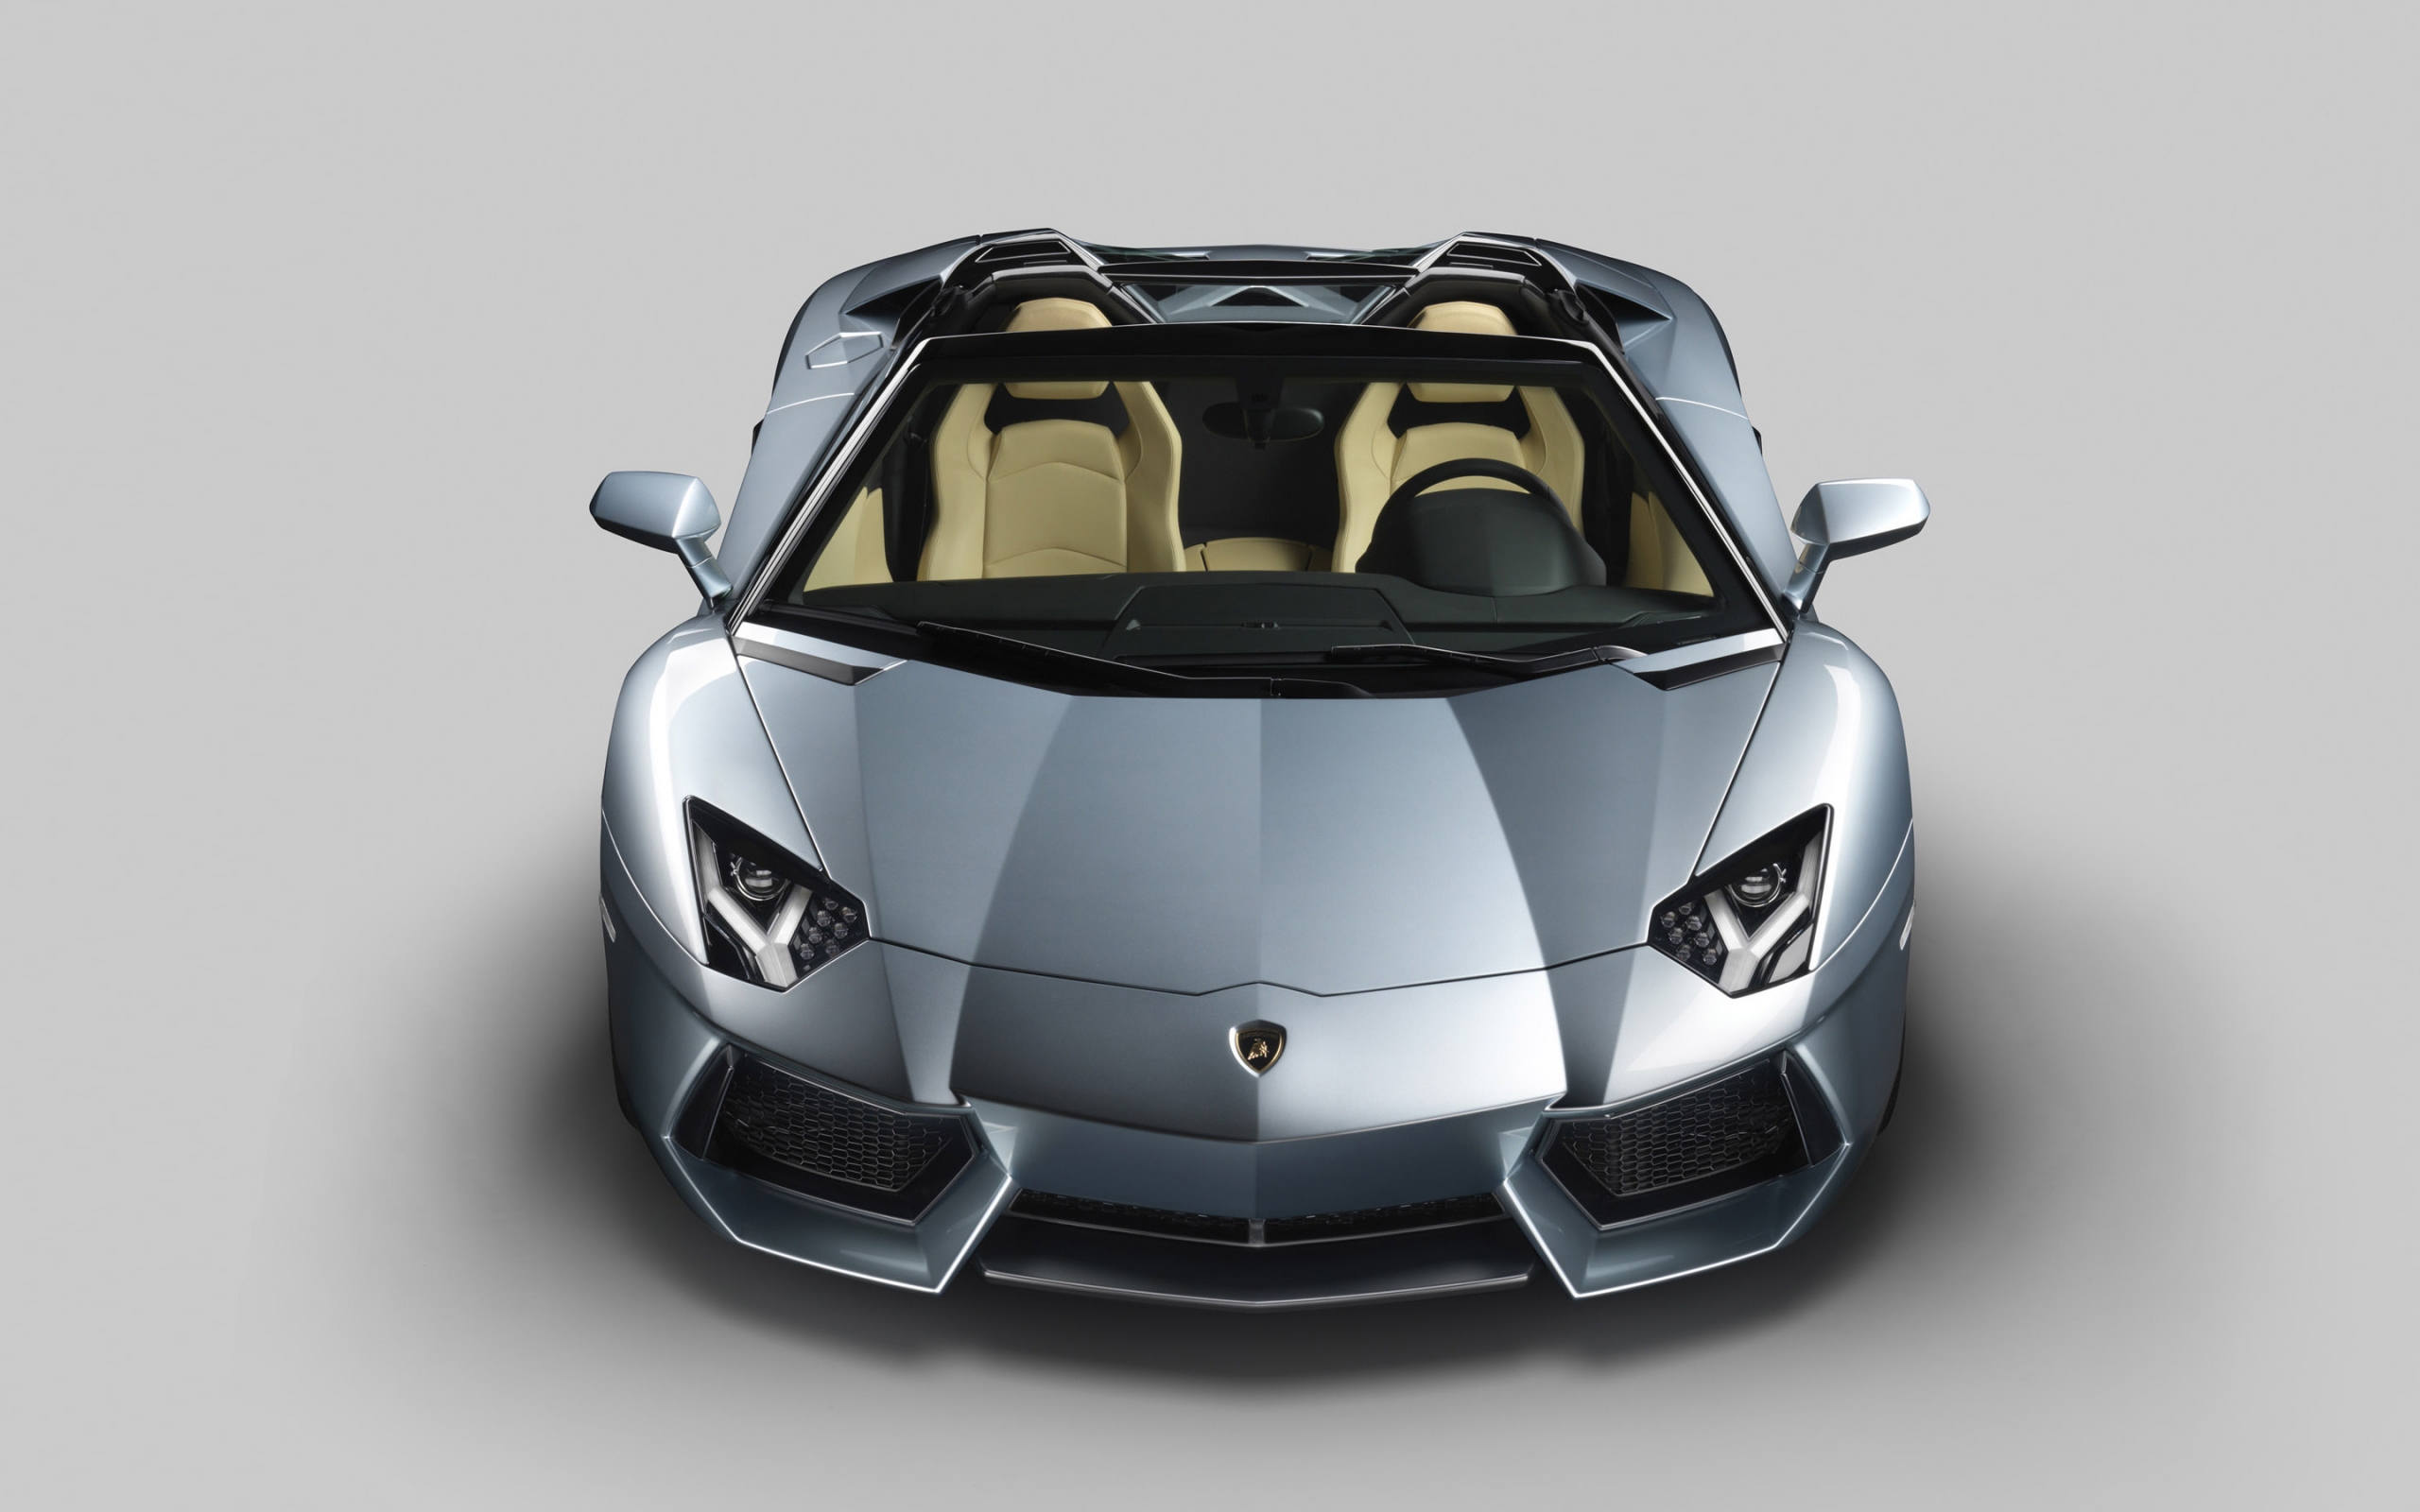 Lamborghini Aventador Roadster LP 700 for 2560 x 1600 widescreen resolution